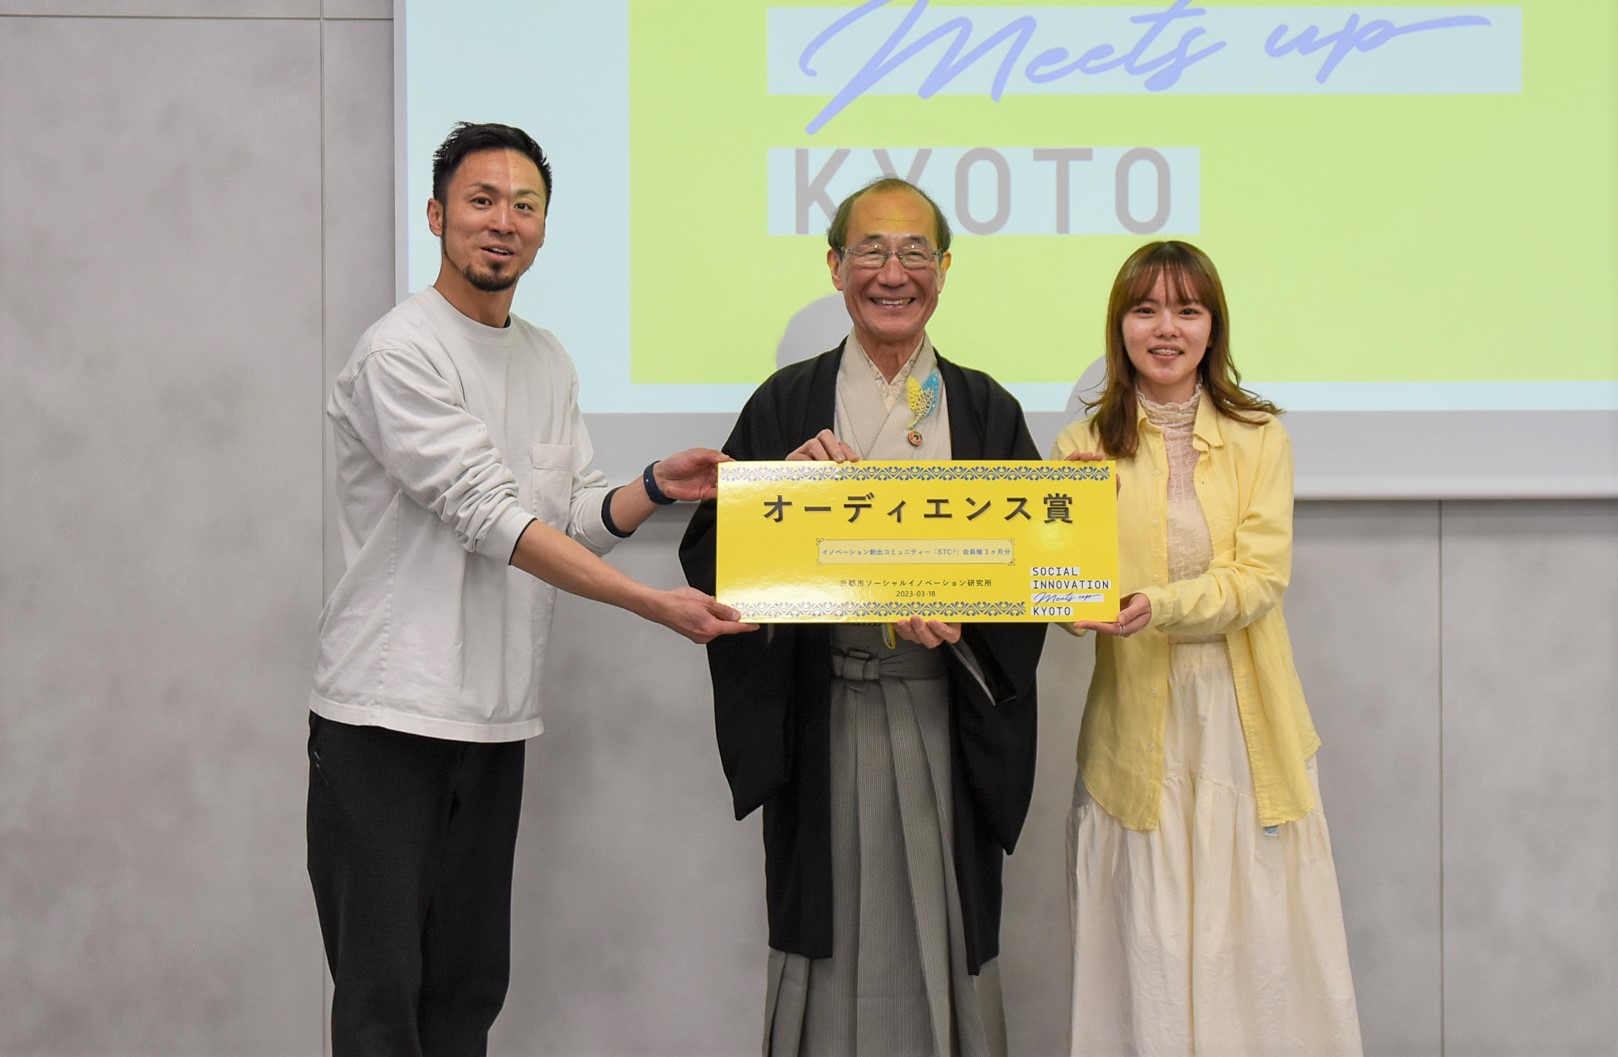 「SOCIAL INNOVATION Meets up KYOTO」オーディエンス賞の発表と当日の様子